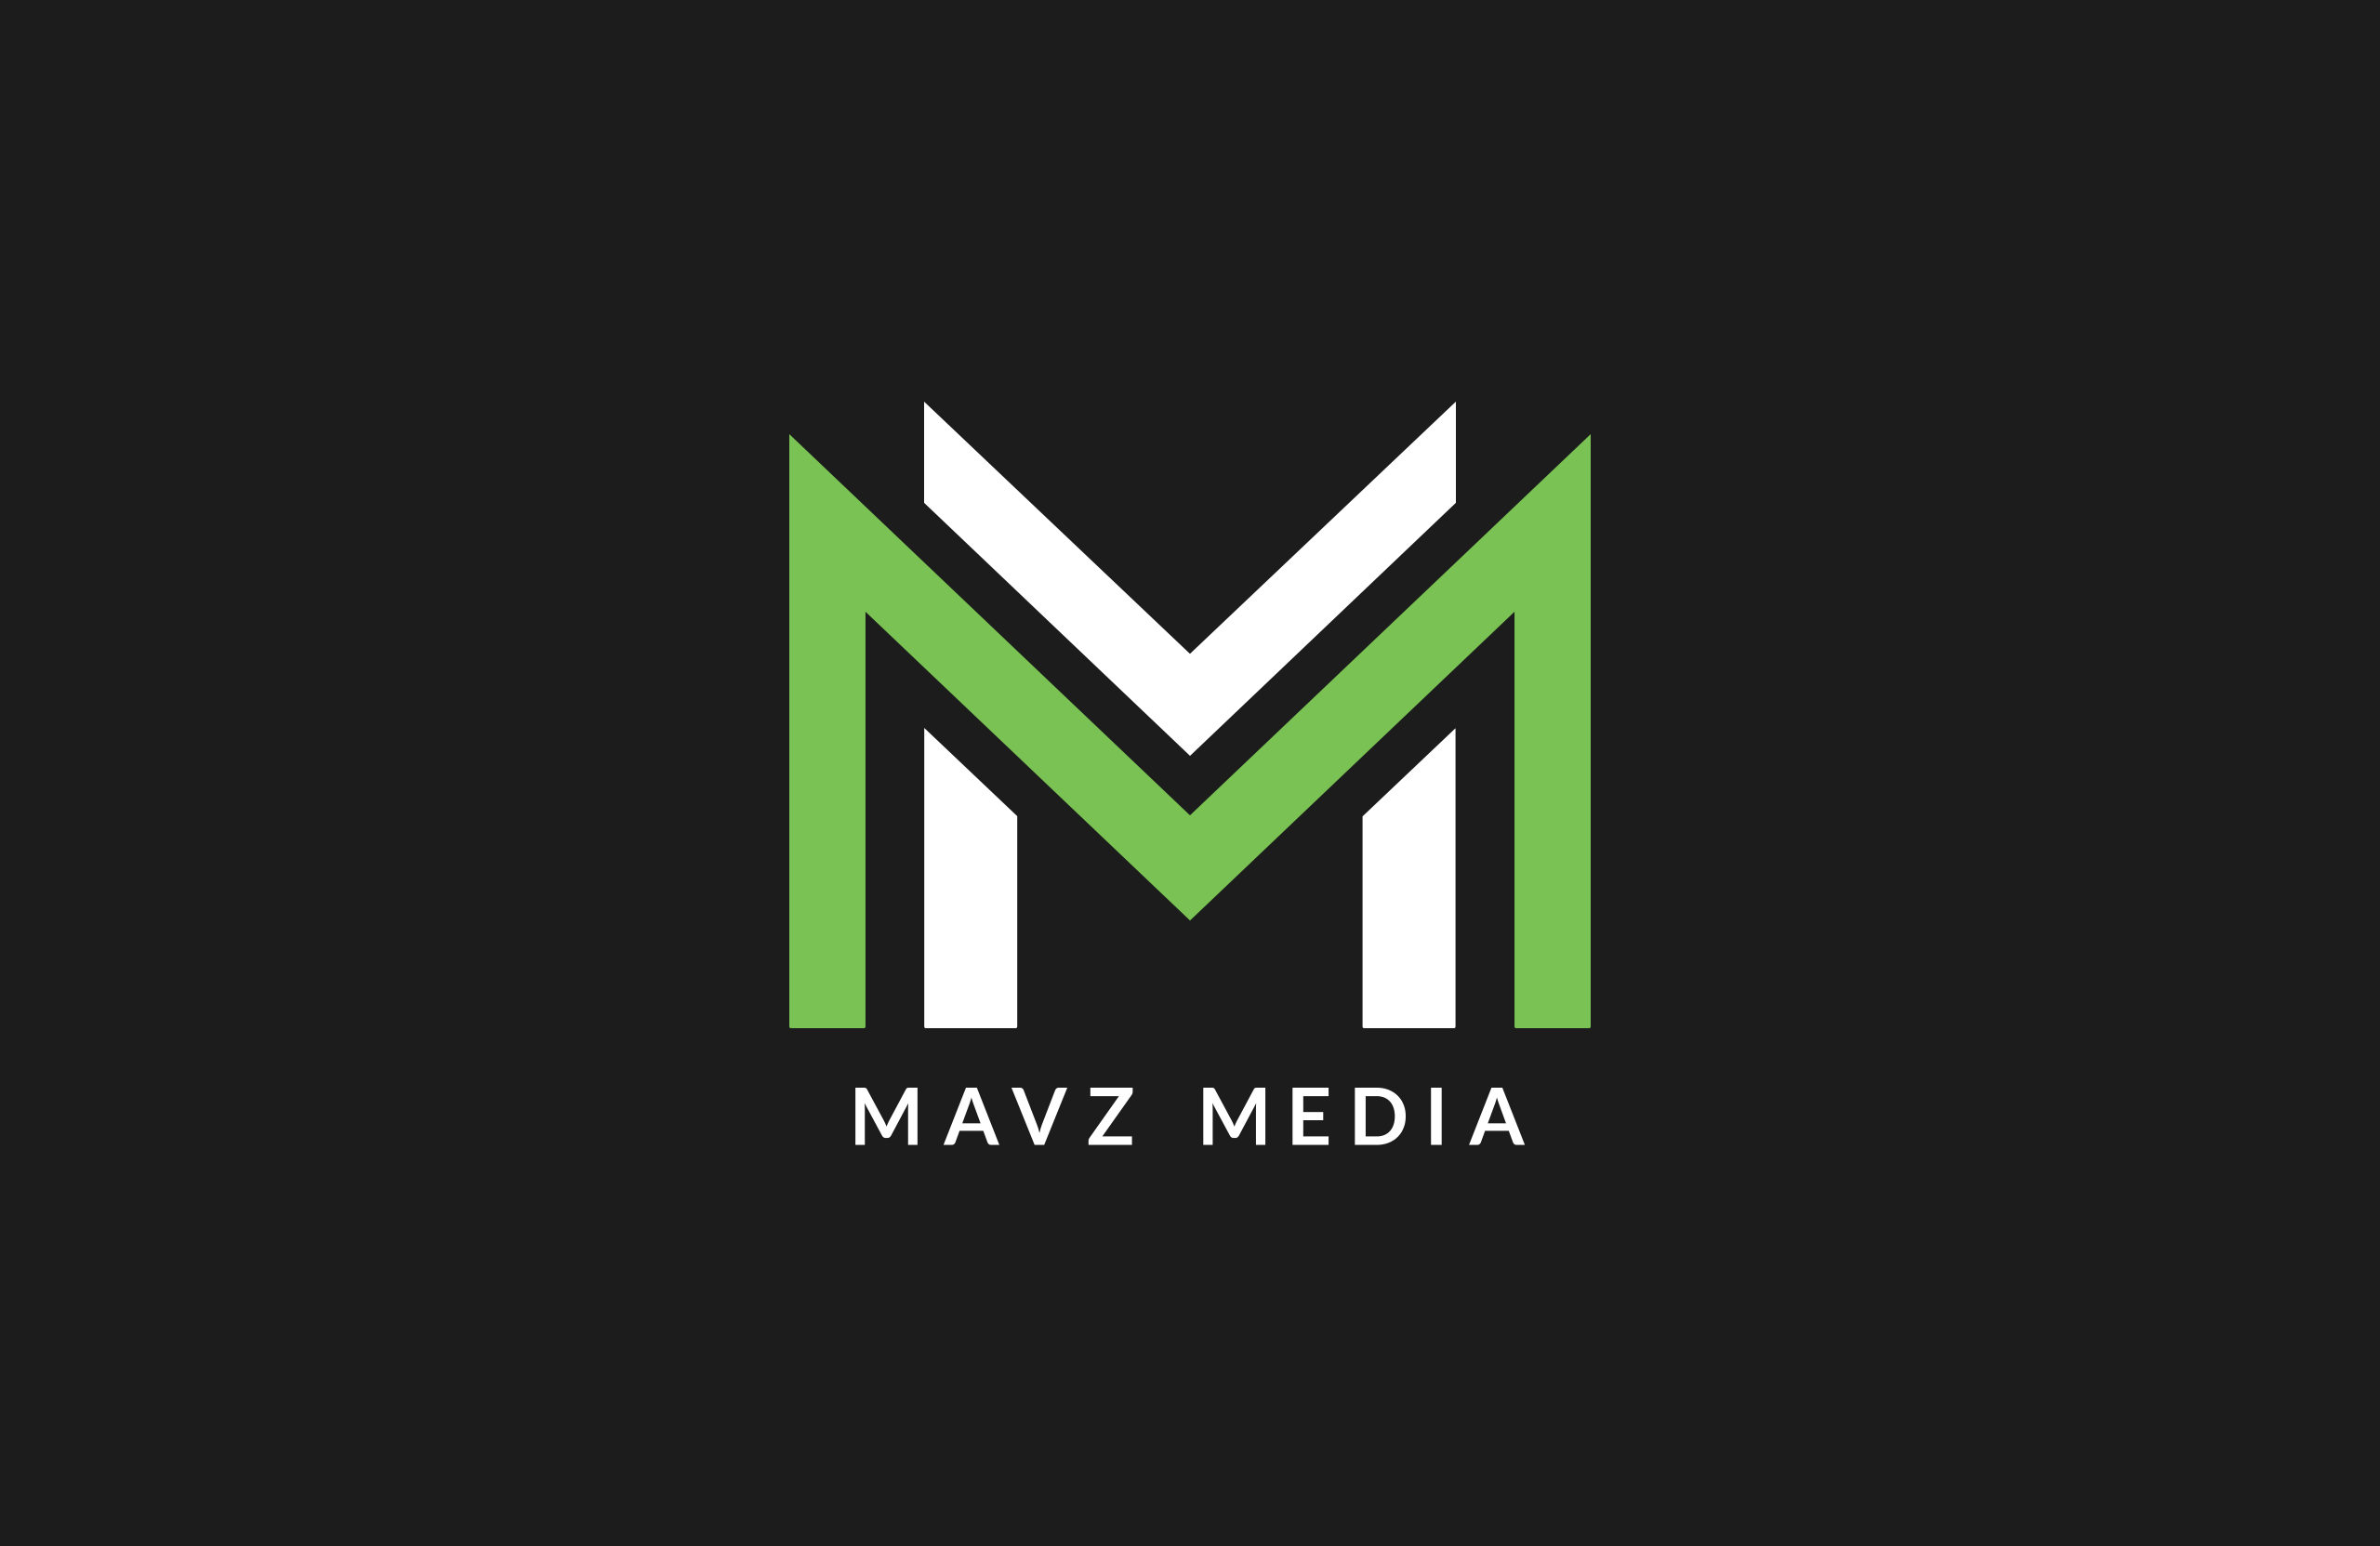 Mavz Media Logo by Garett Southerton, Creative Brand Strategist of Garett® based in Long Island, New York